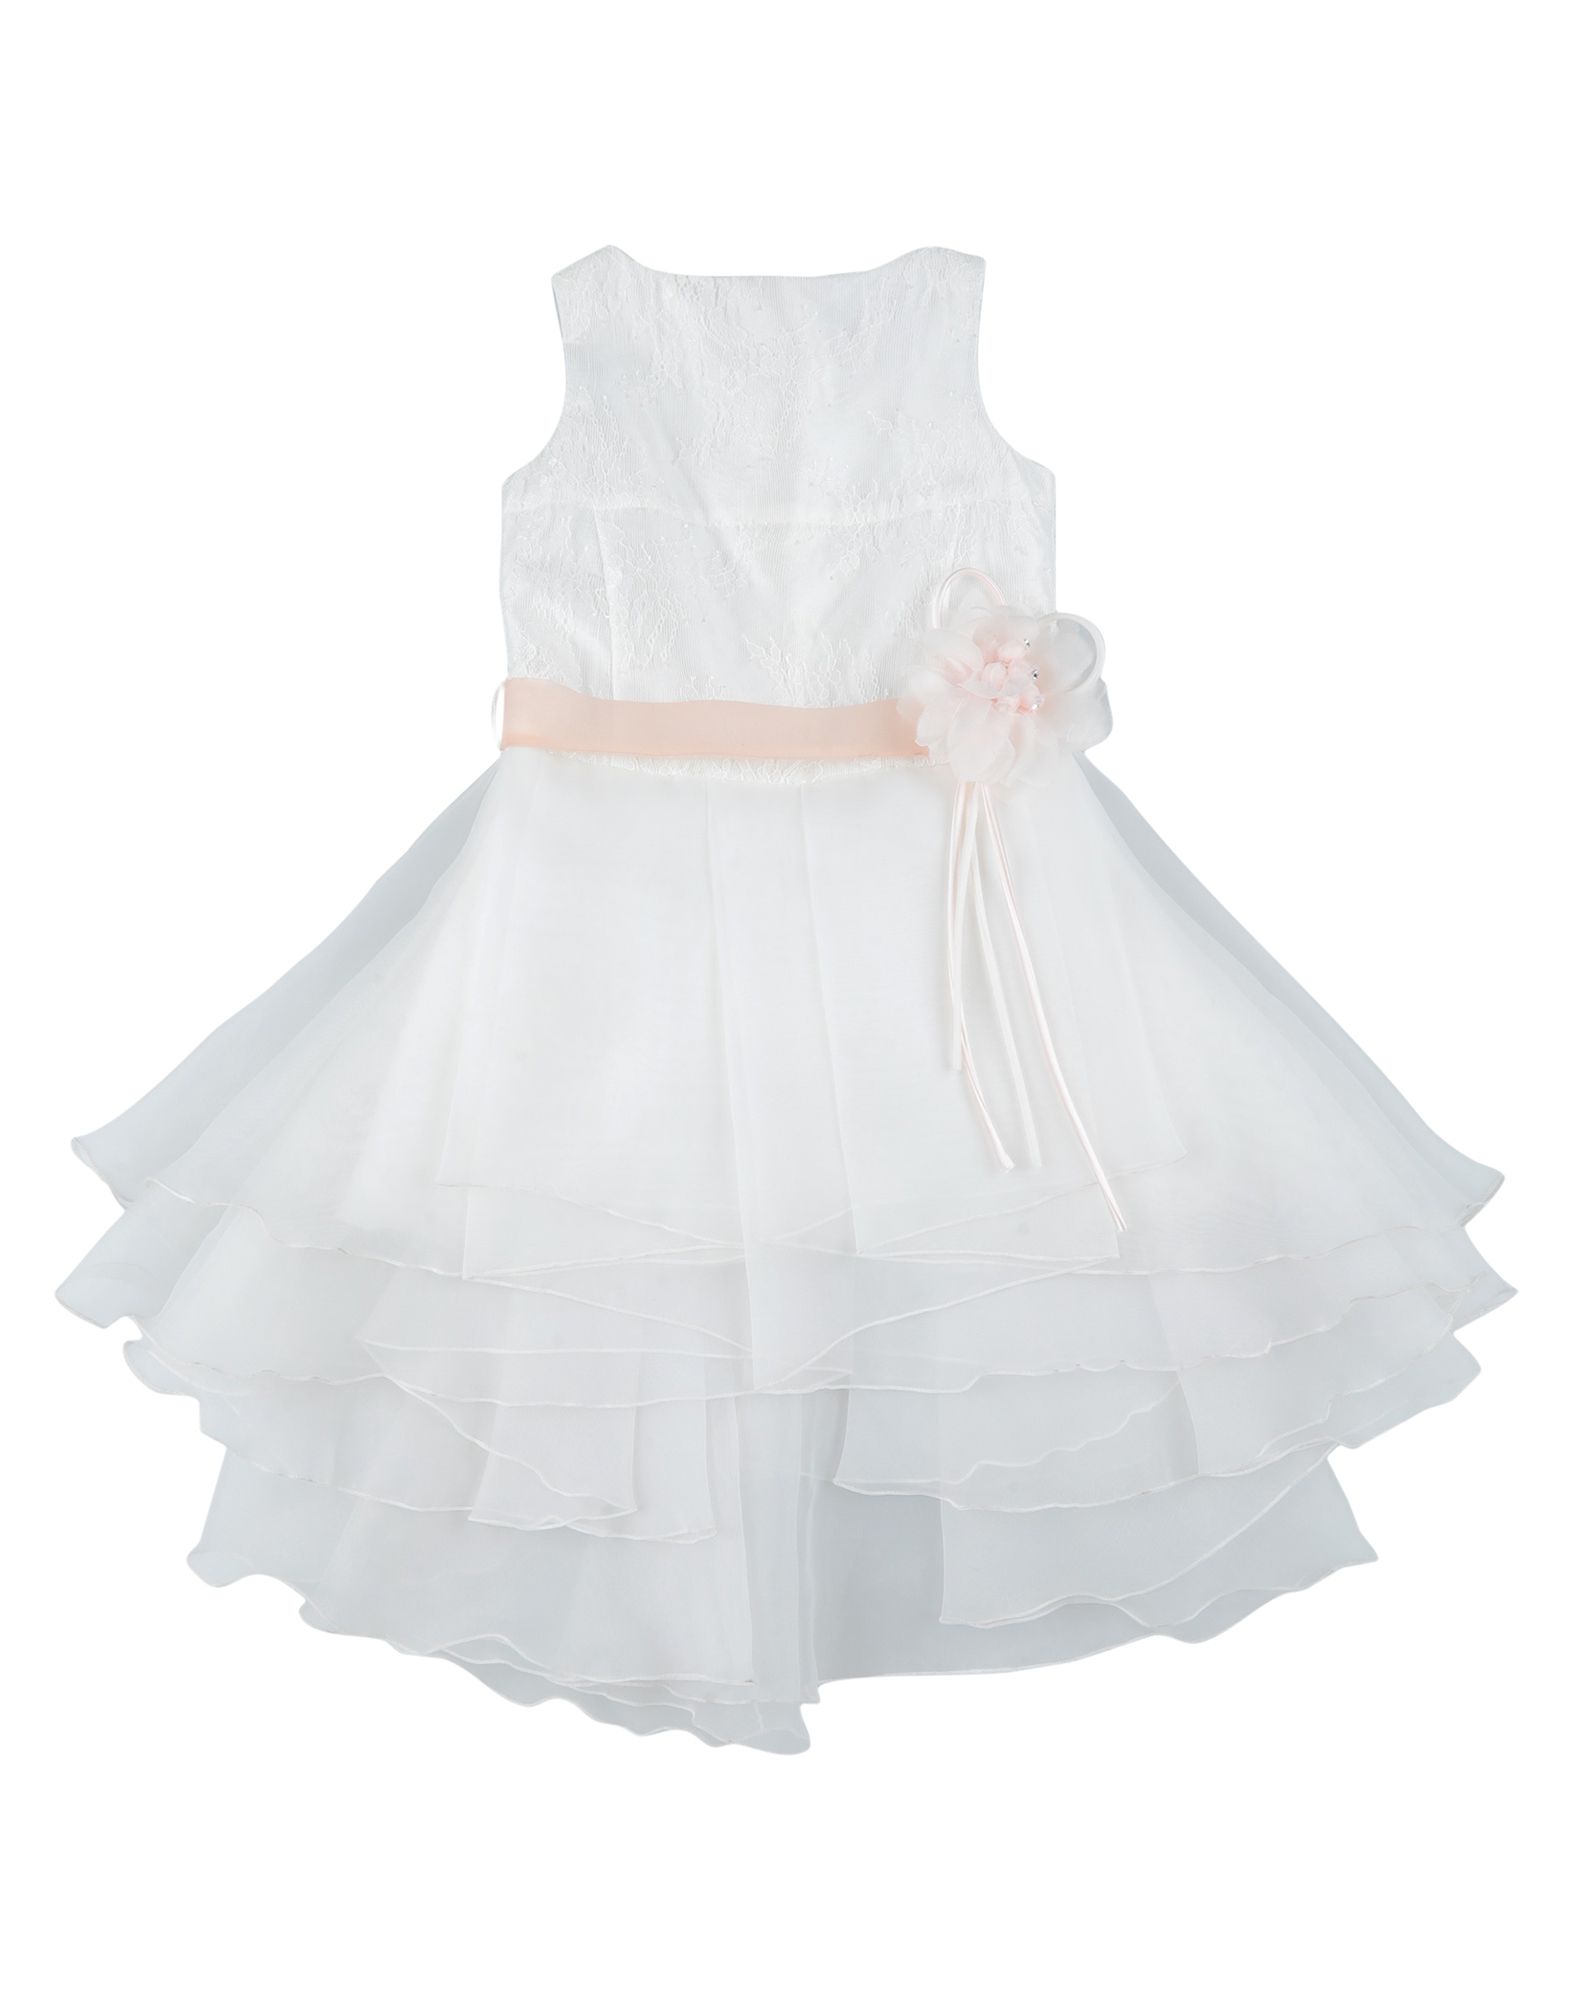 Le Fate Kids' Dresses In White